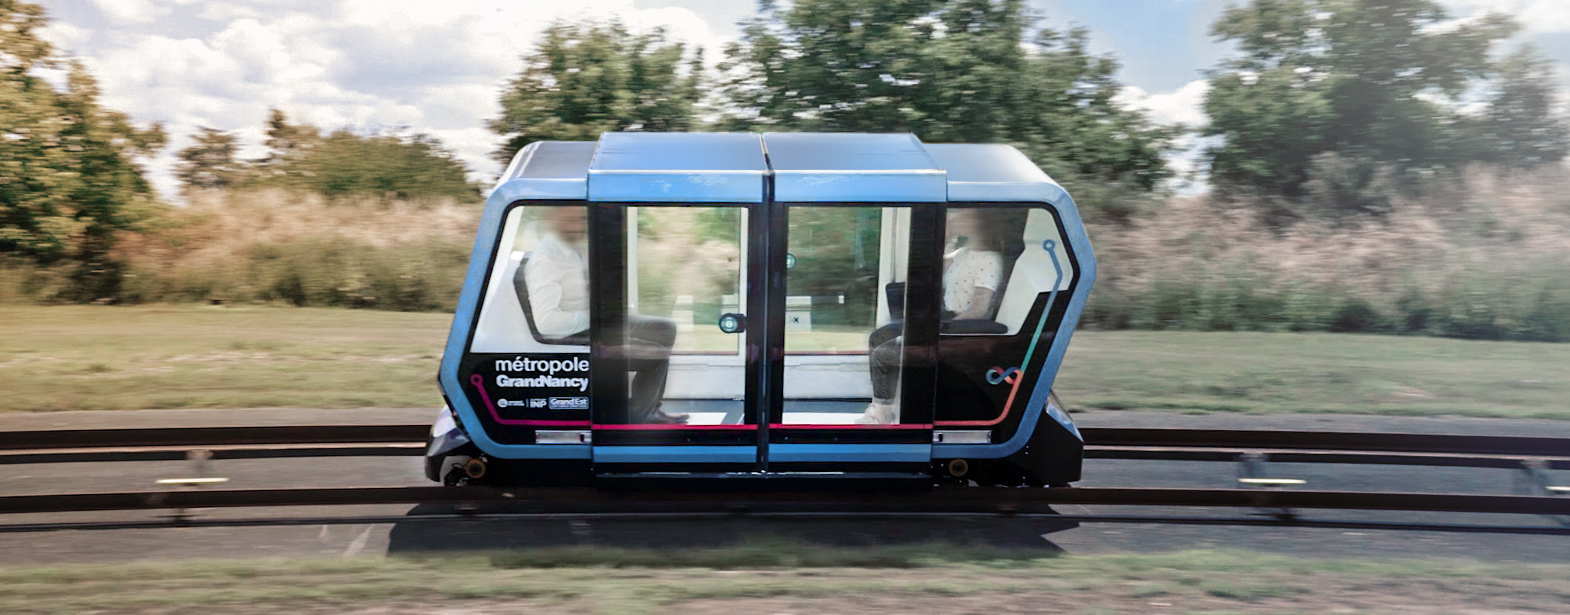 Urbanloop, smart mobility, JO 224, véhicule autonome